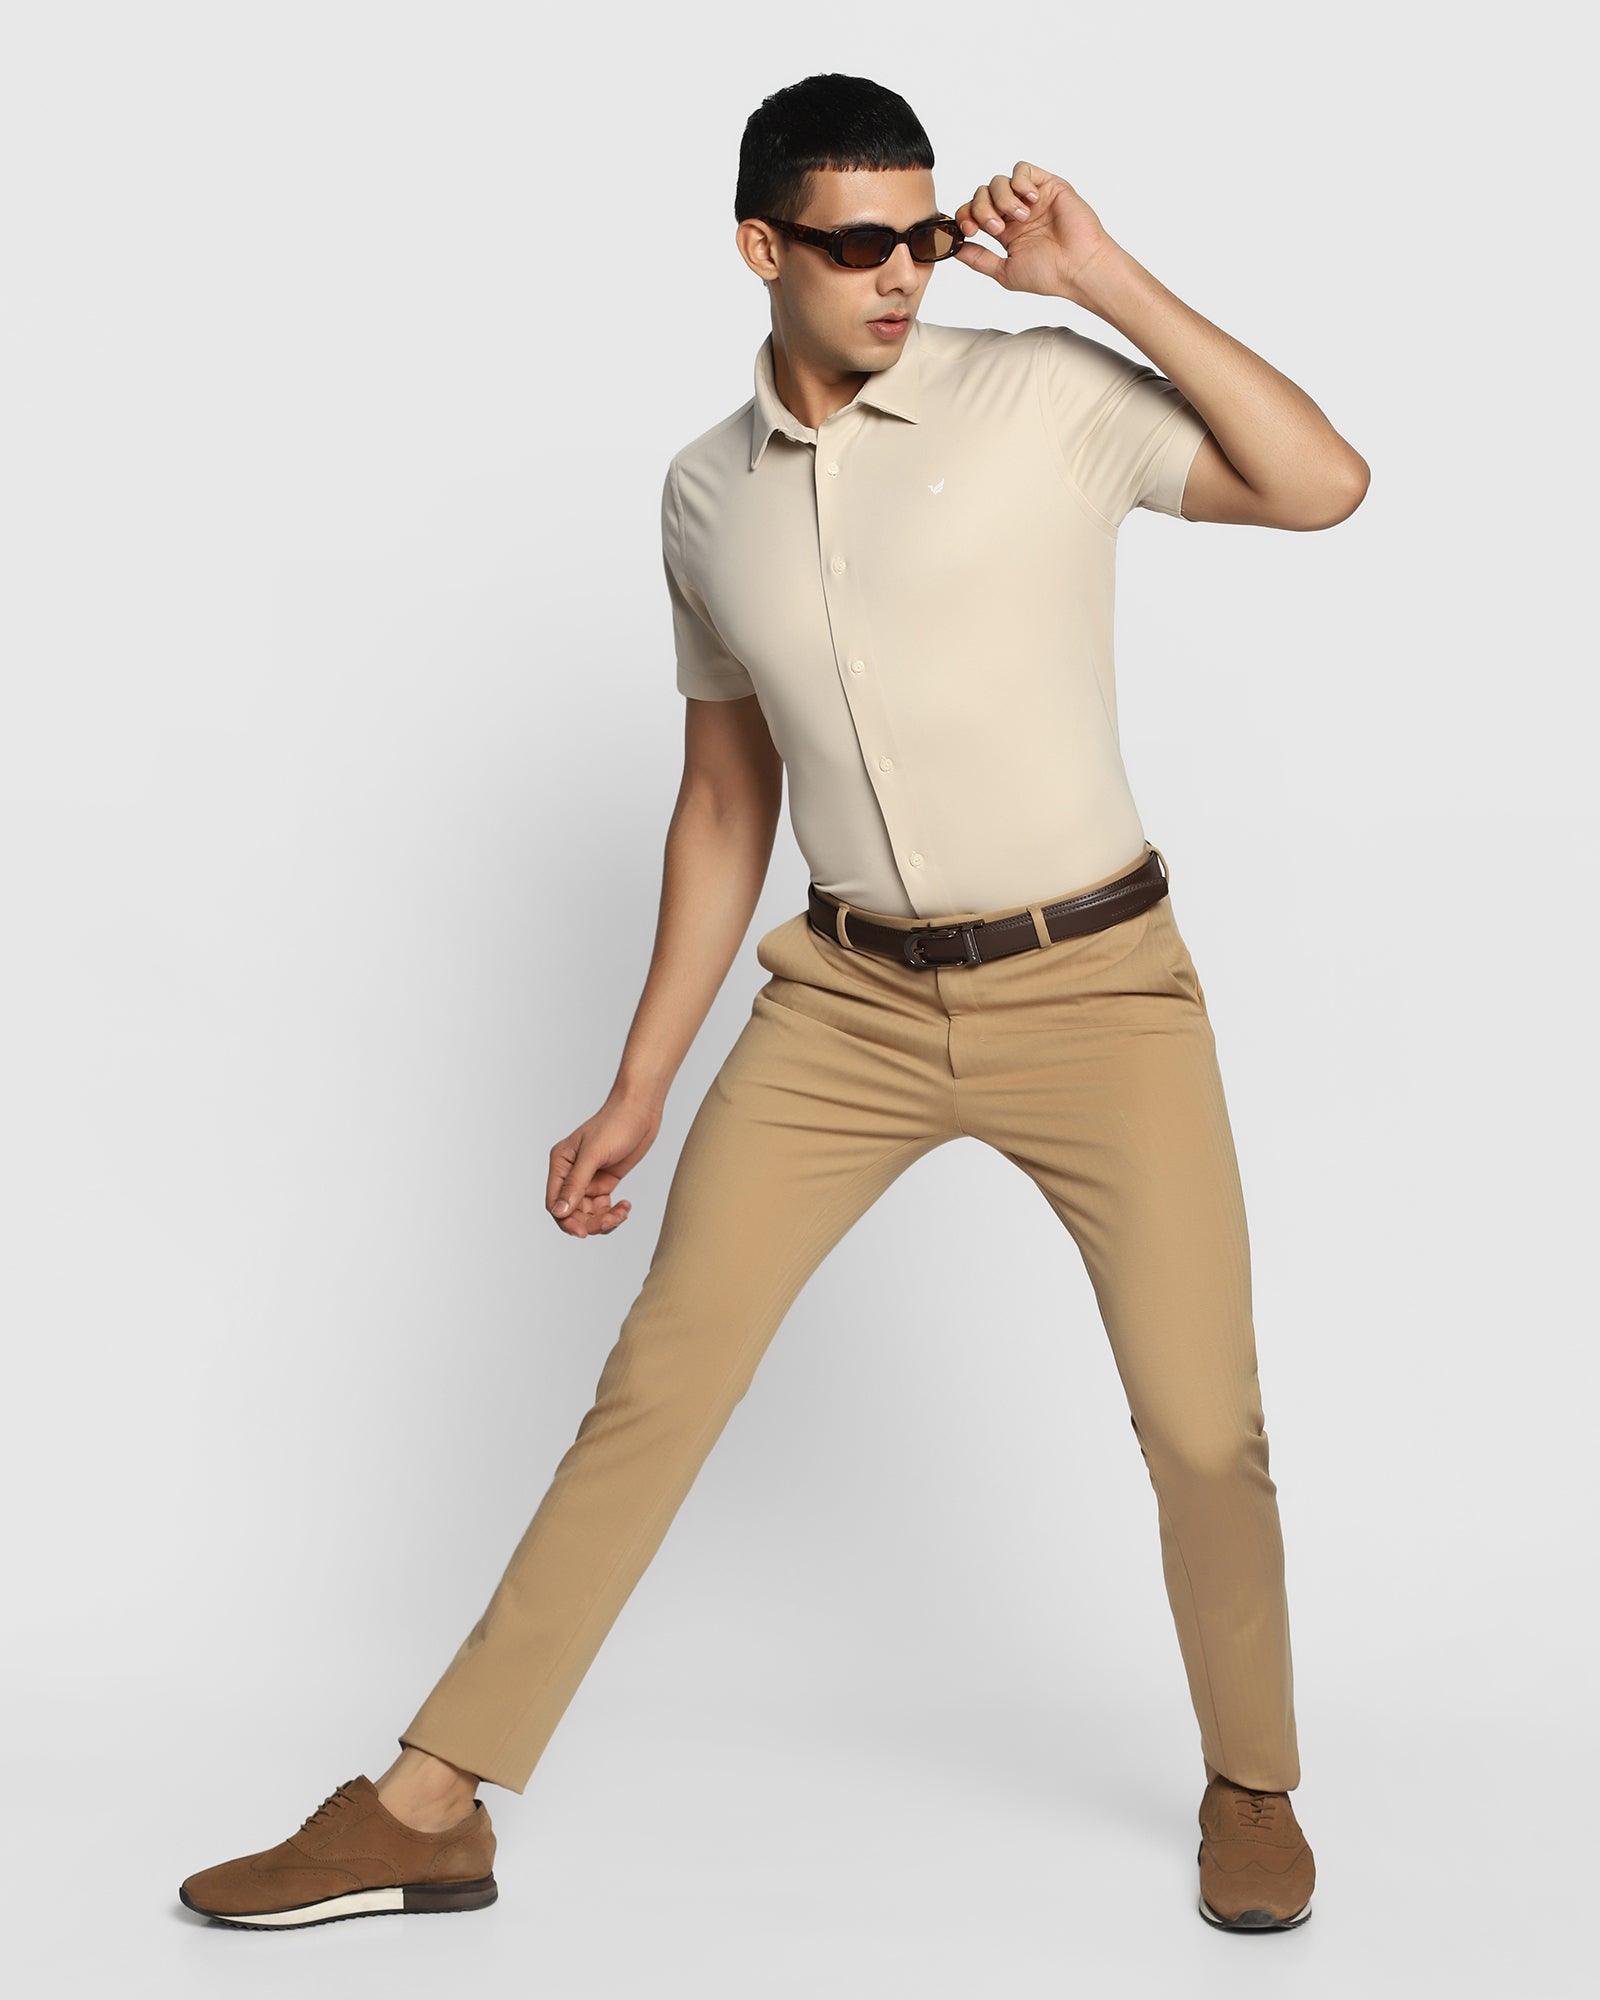 TechPro Slim Fit B-91 Formal Beige Striped Trouser - Aiden